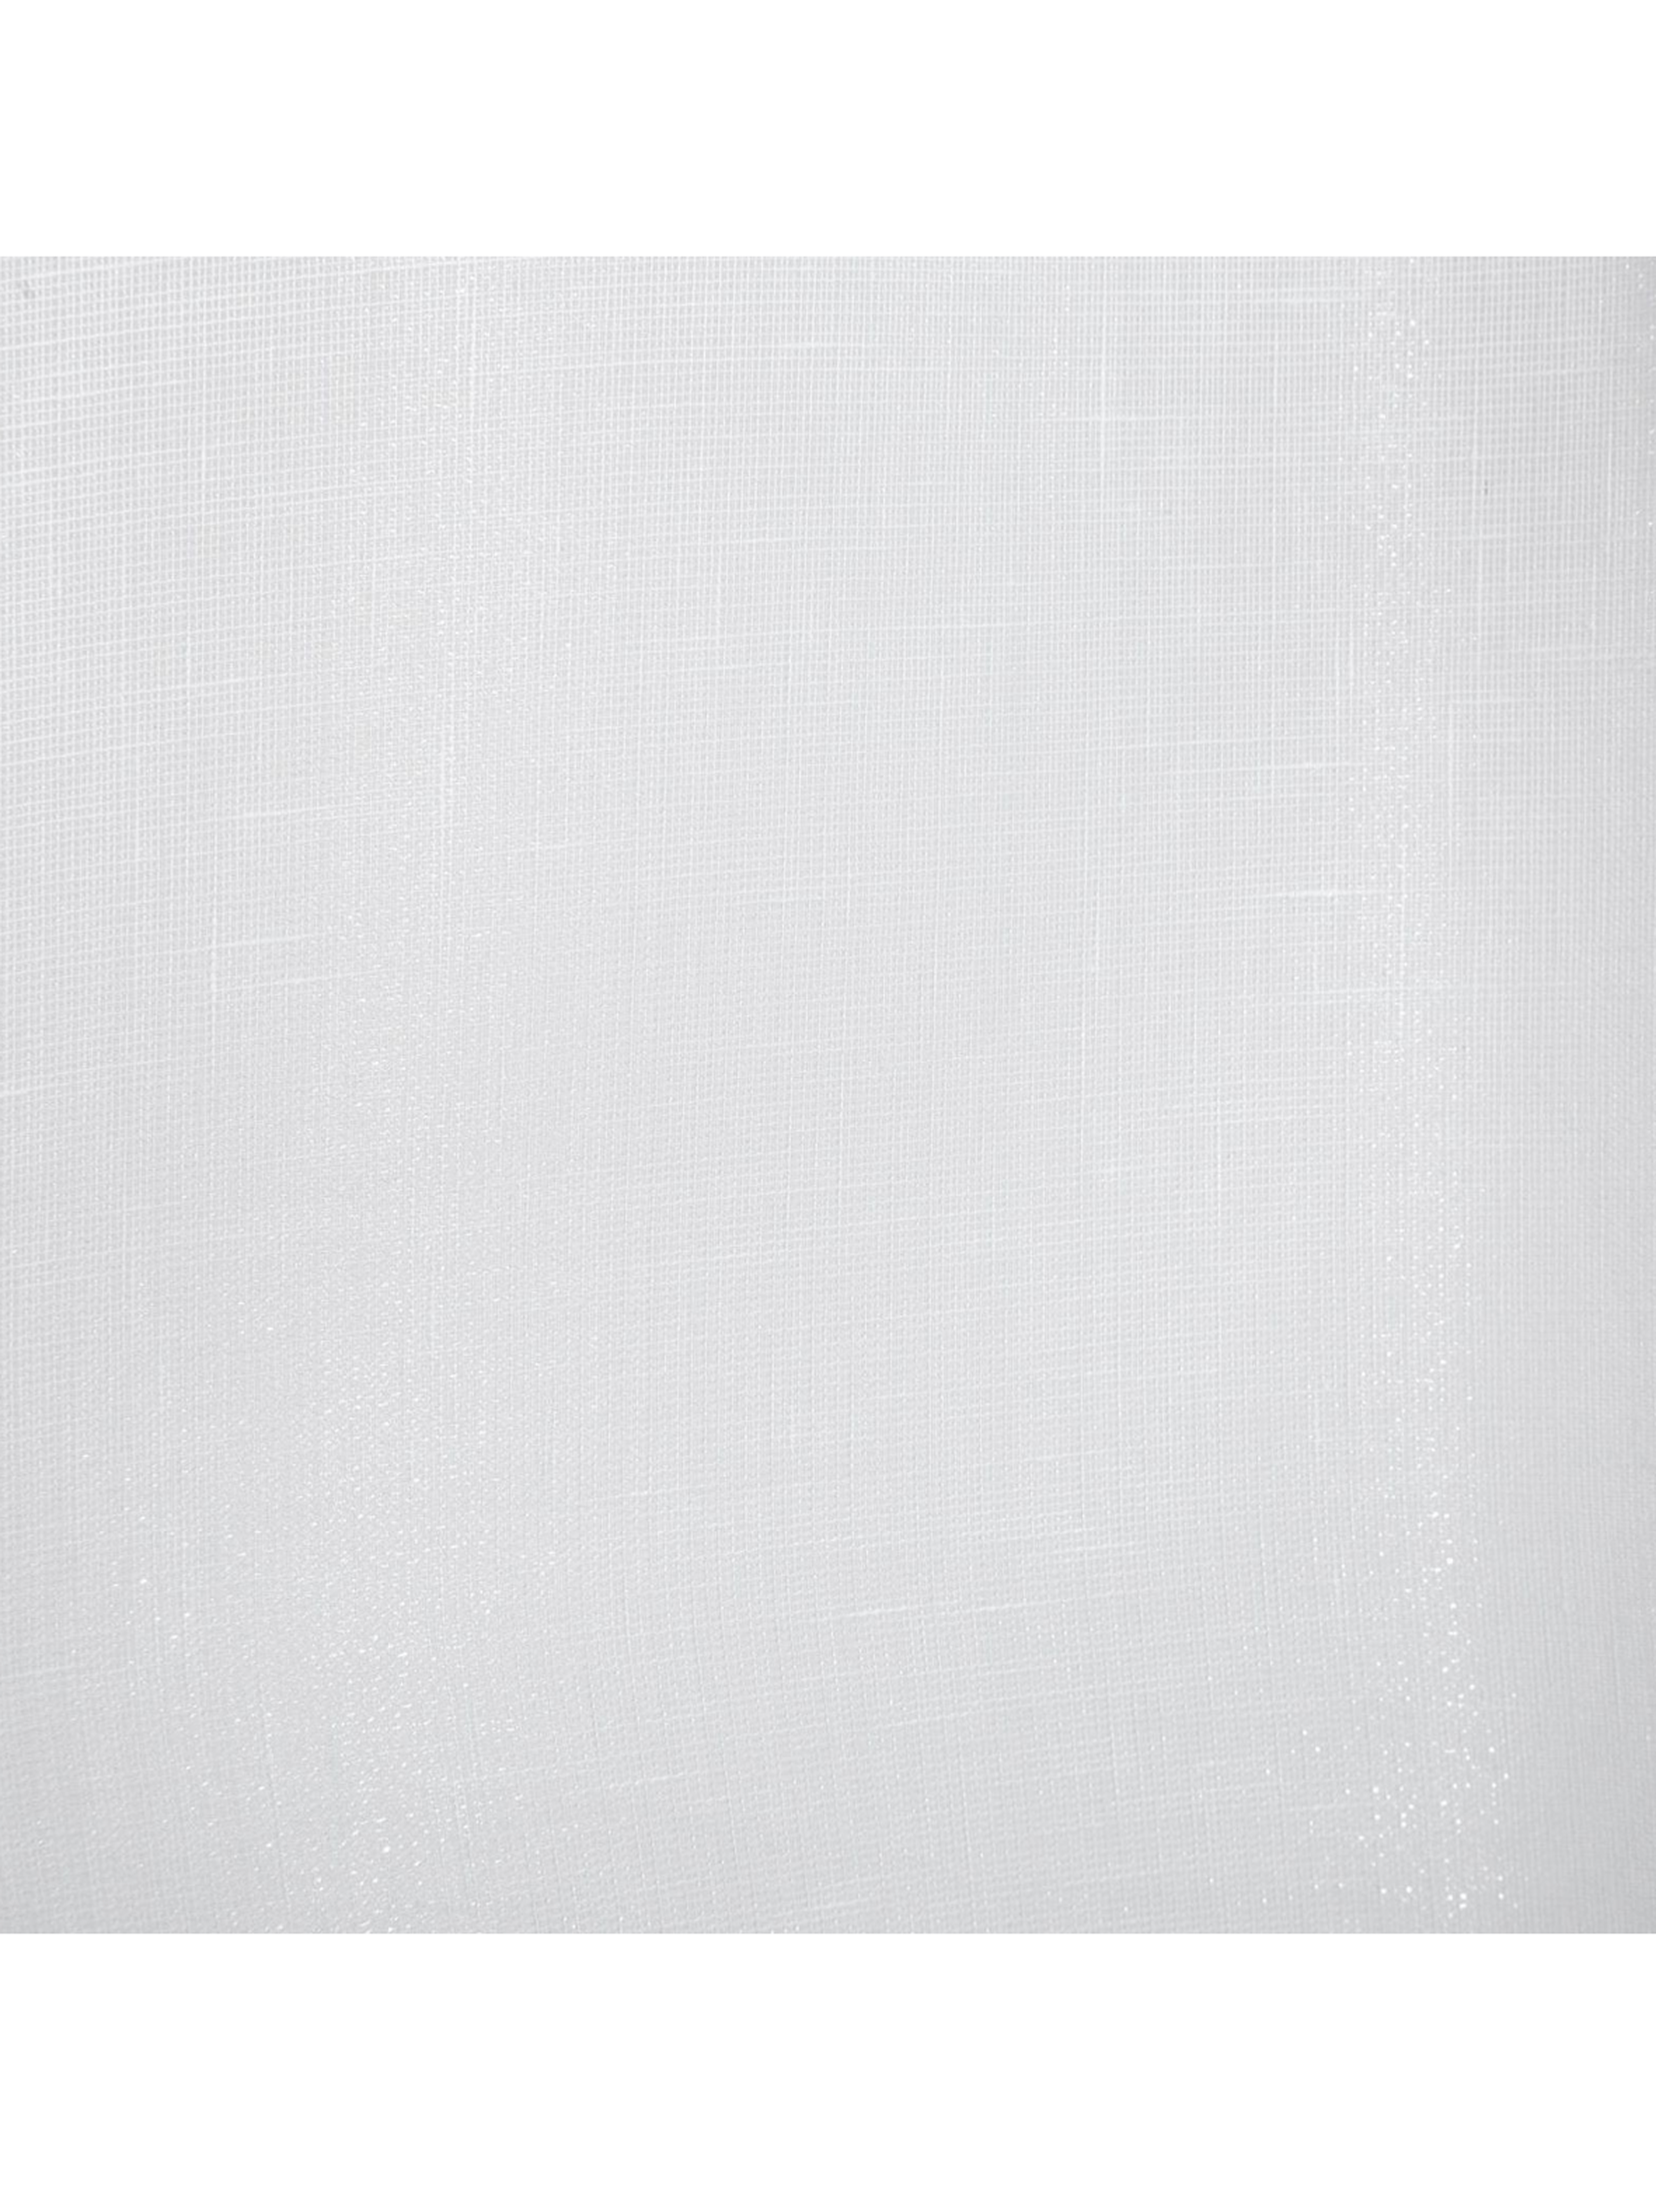 Biała firana 140x250 cm przepuszczająca światło